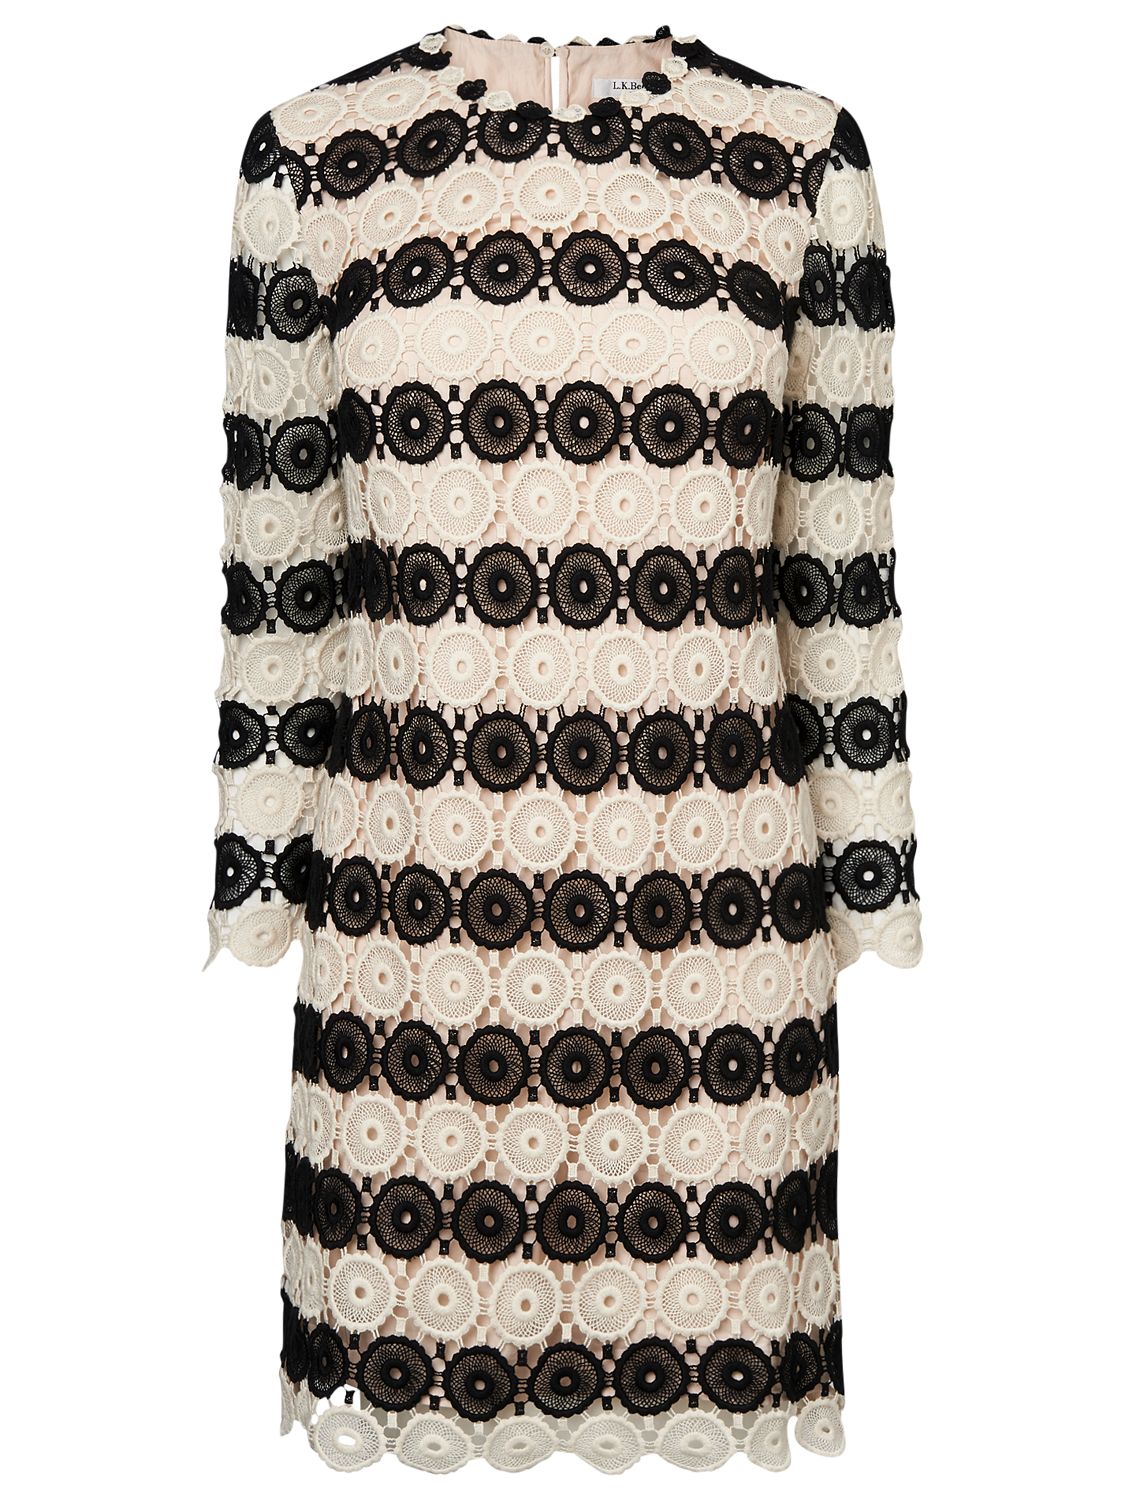 L.K. Bennett Claudine Crochet Shift Dress, Black/Cream